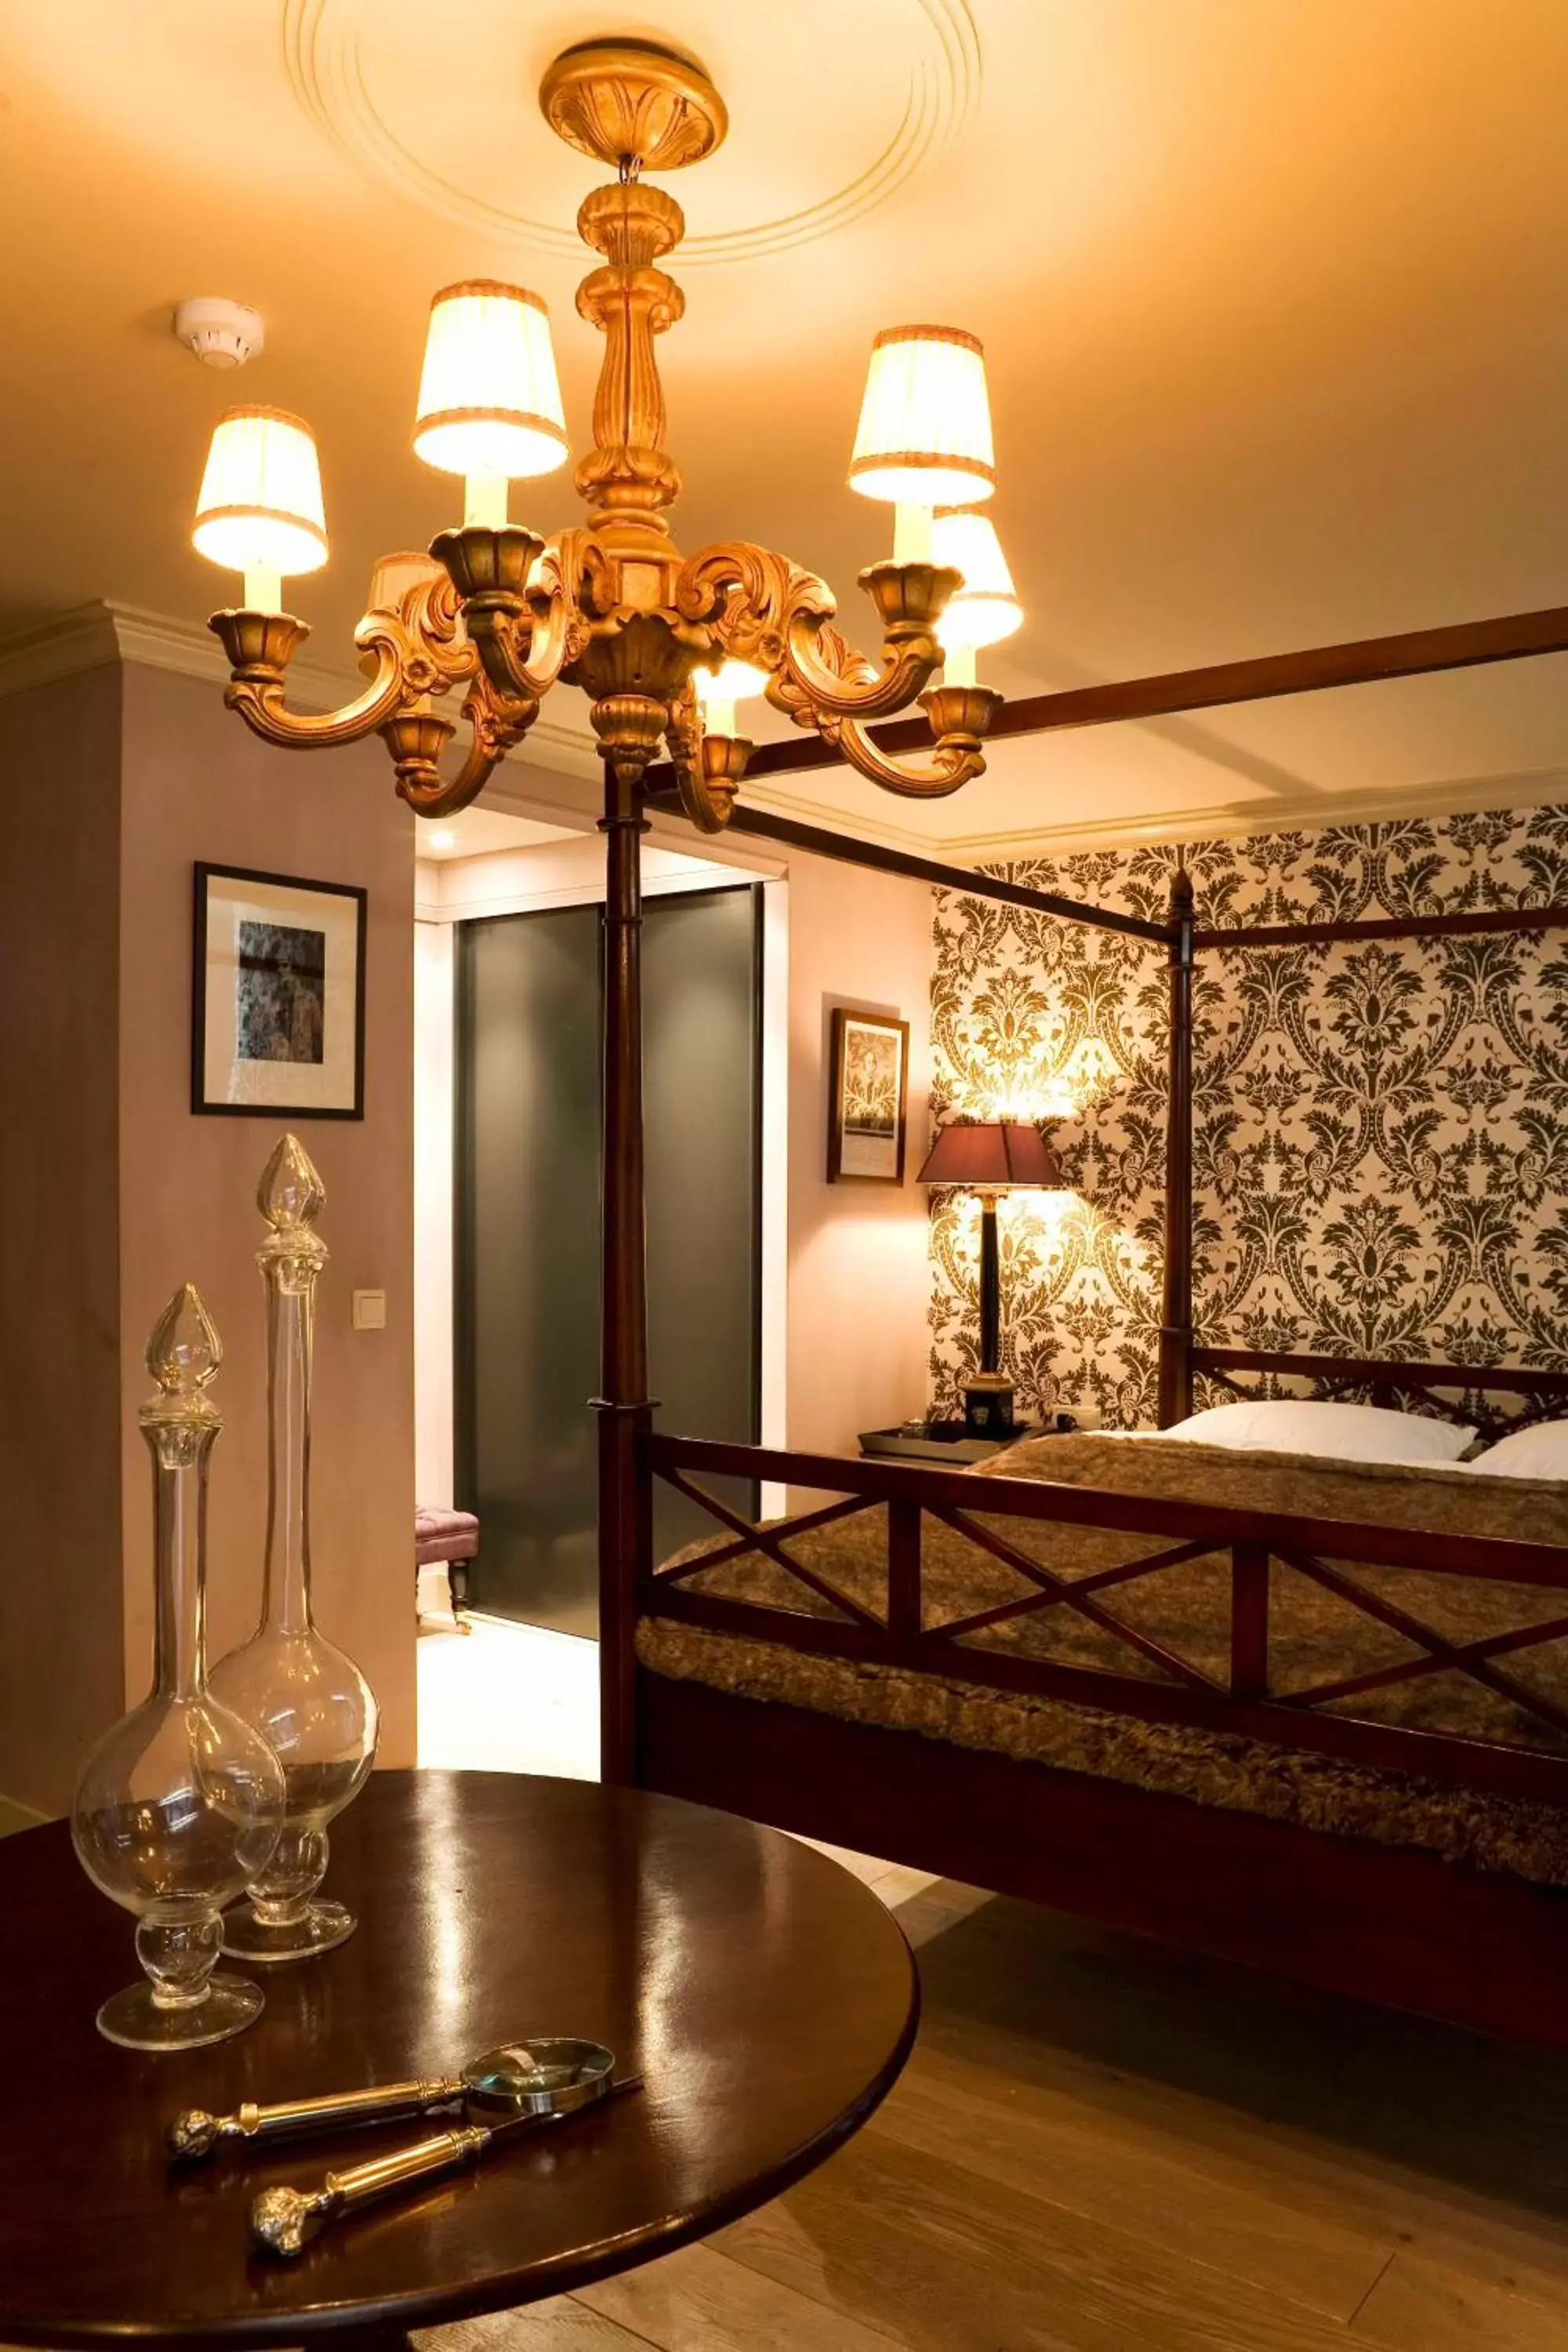 Bed in Suitehotel Posthoorn